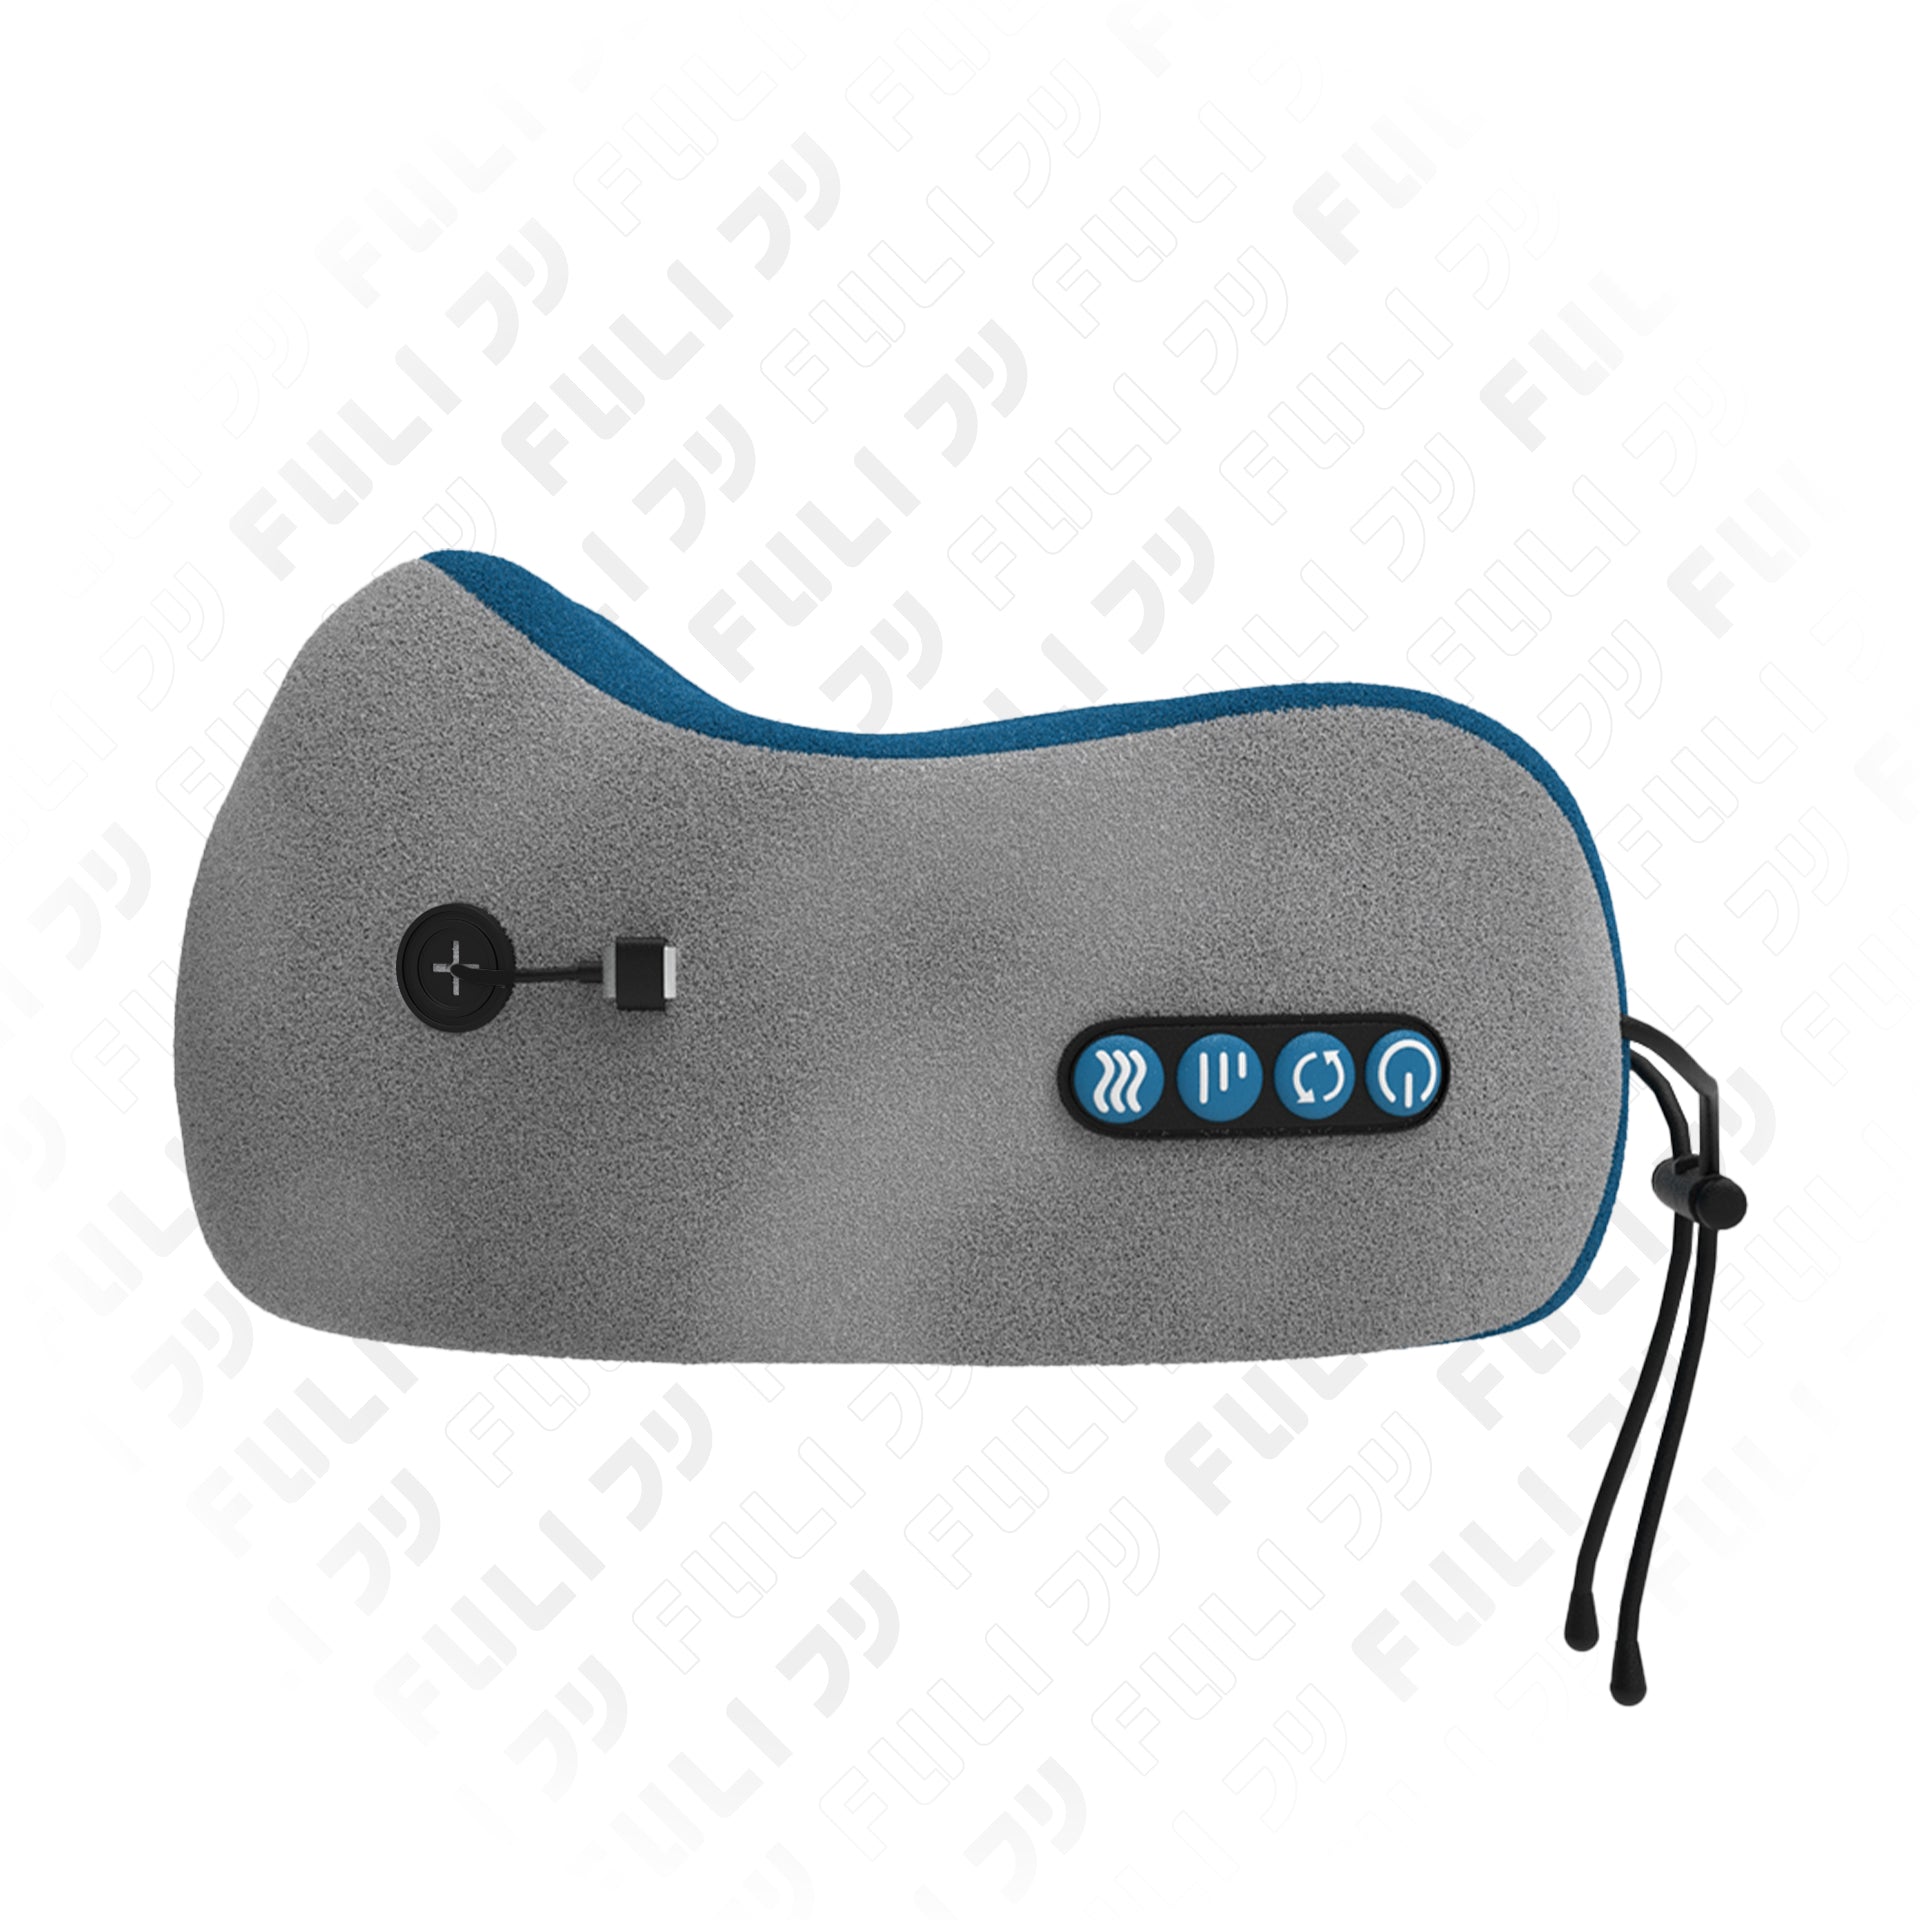 หมอนนวดคอไฟฟ้า | FULI Ergo Massage Neck Pillow Blue Limited Edition